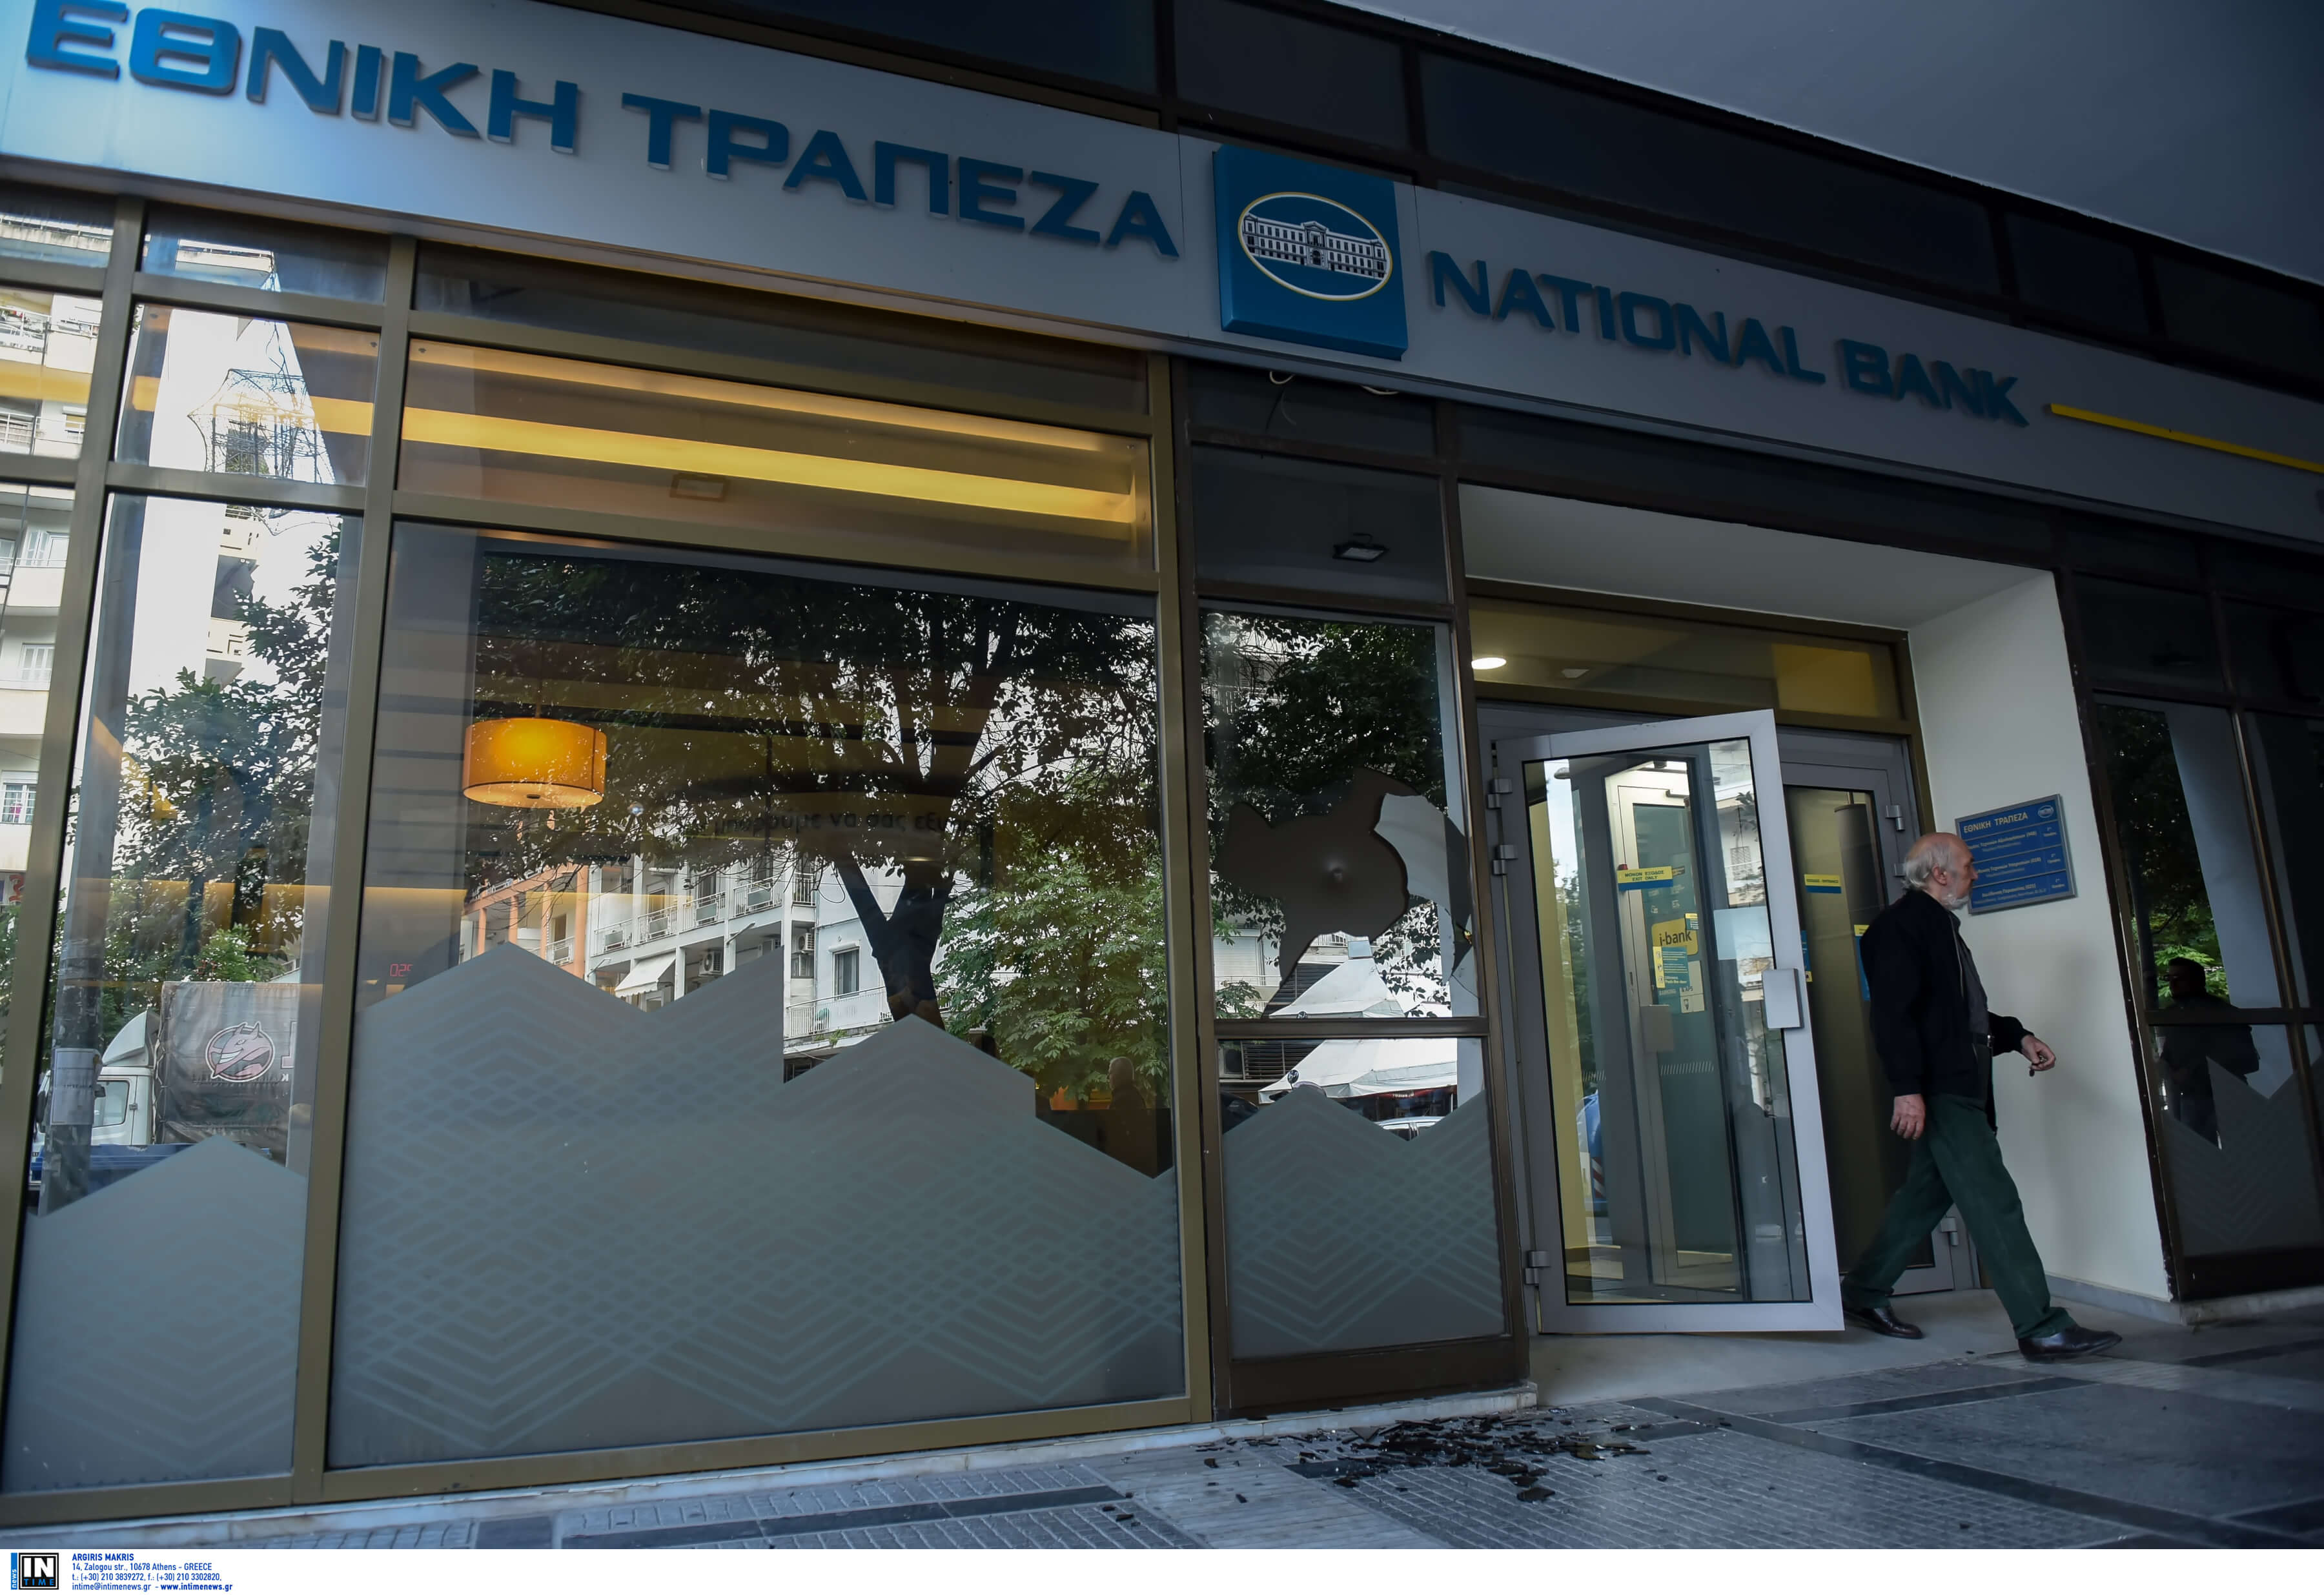 Θεσσαλονίκη: Έκαναν την τράπεζα καλοκαιρινή – Καταδρομική επίθεση λίγο πριν τα μεσάνυχτα [pics, video]